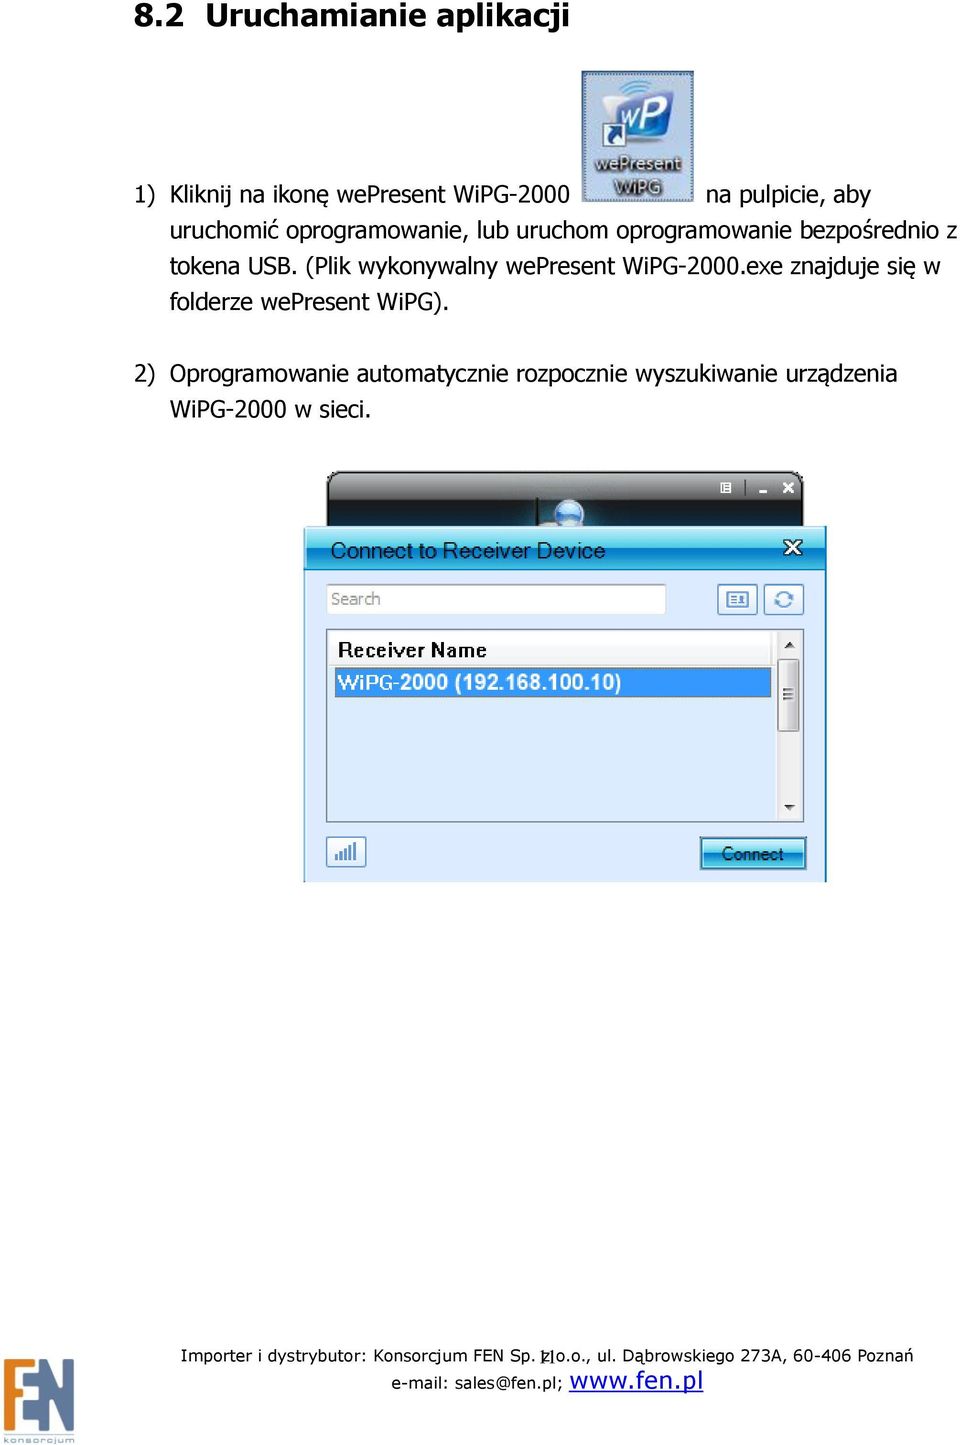 (Plik wykonywalny wepresent WiPG-2000.exe znajduje się w folderze wepresent WiPG).